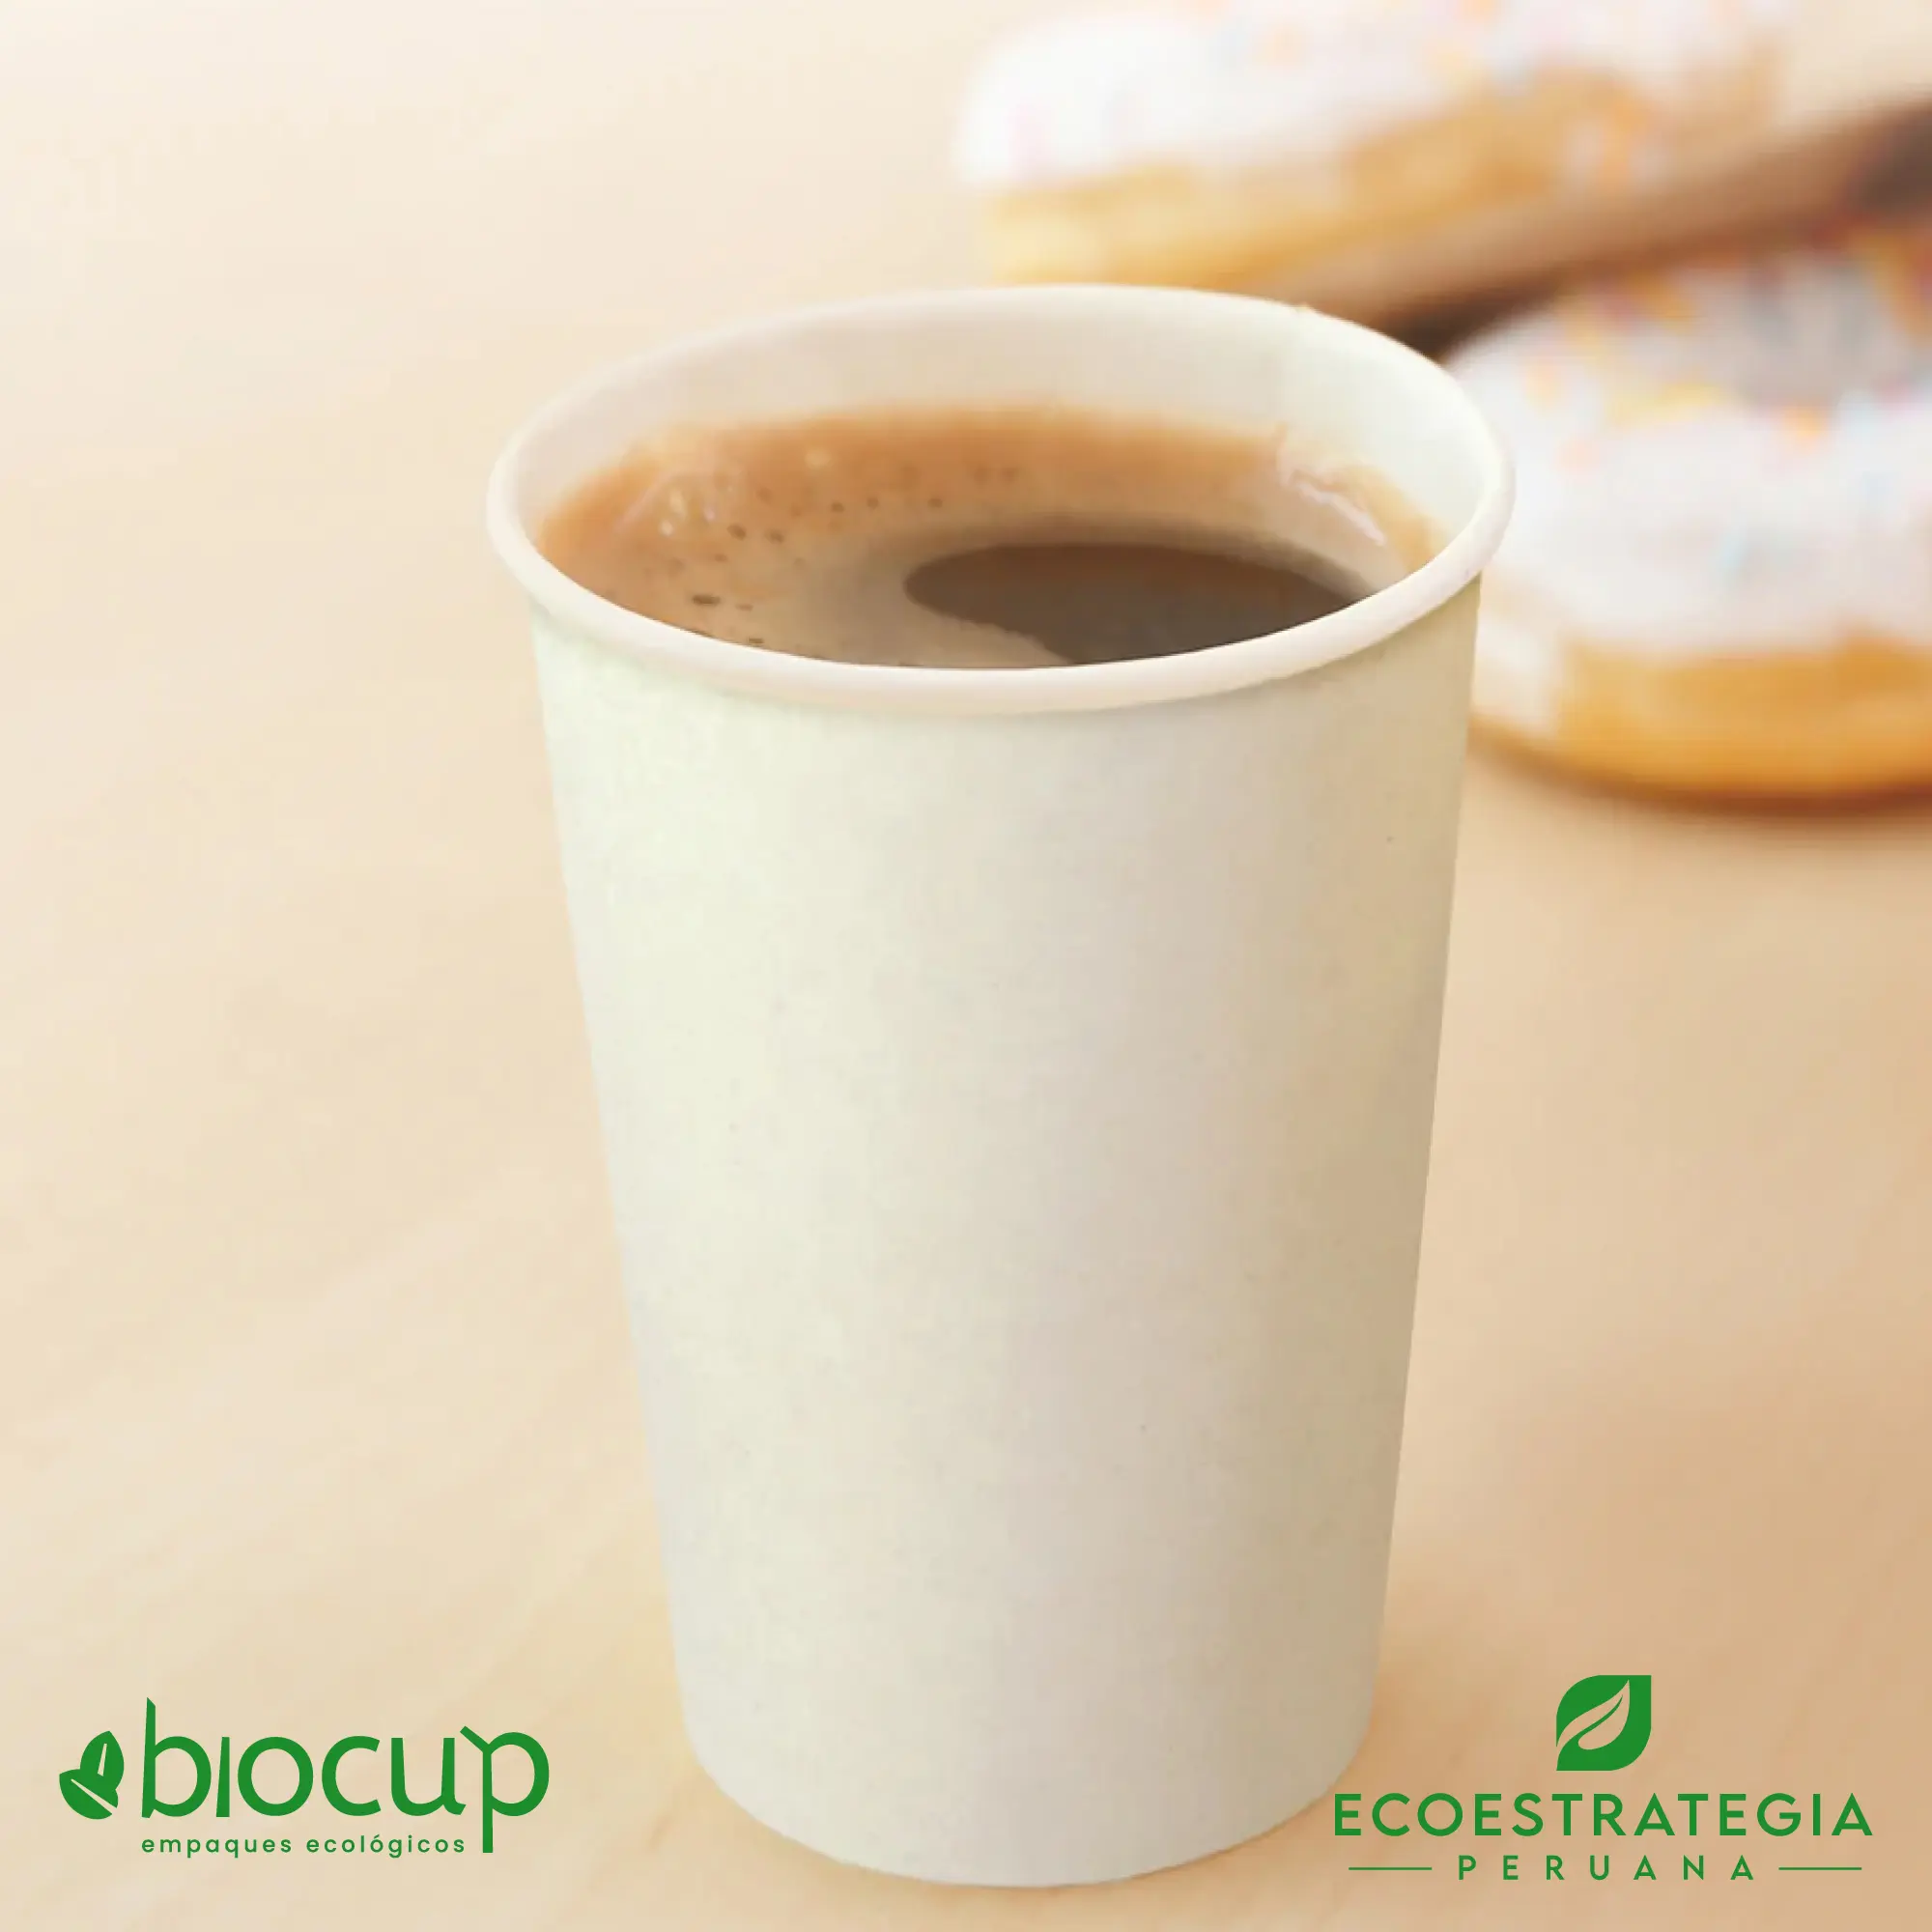 Vasos reciclable para bebidas calientes EP-B14 es tambien conocido como Vasos de bambú biodegradables 14 oz, vasos compostable 14 oz, vaso desechable bambú, vasos biodegradable de bambú por mayor, vaso compostable 14 oz , vaso bambú, vaso bioform 14 oz, vaso bioform 12 oz, vaso pamolsa biodegradable, vaso por mayor, vaso compostable marrón, vasos para café Perú, vasos personalizable biodegradable, vaso hermético para delivery, vasos biodegradables para delivery, mayoristas de vasos biodegradables, distribuidores de vasos biodegradables, importadores de vasos biodegradables, vasos biodegradables eco estrategia peruana